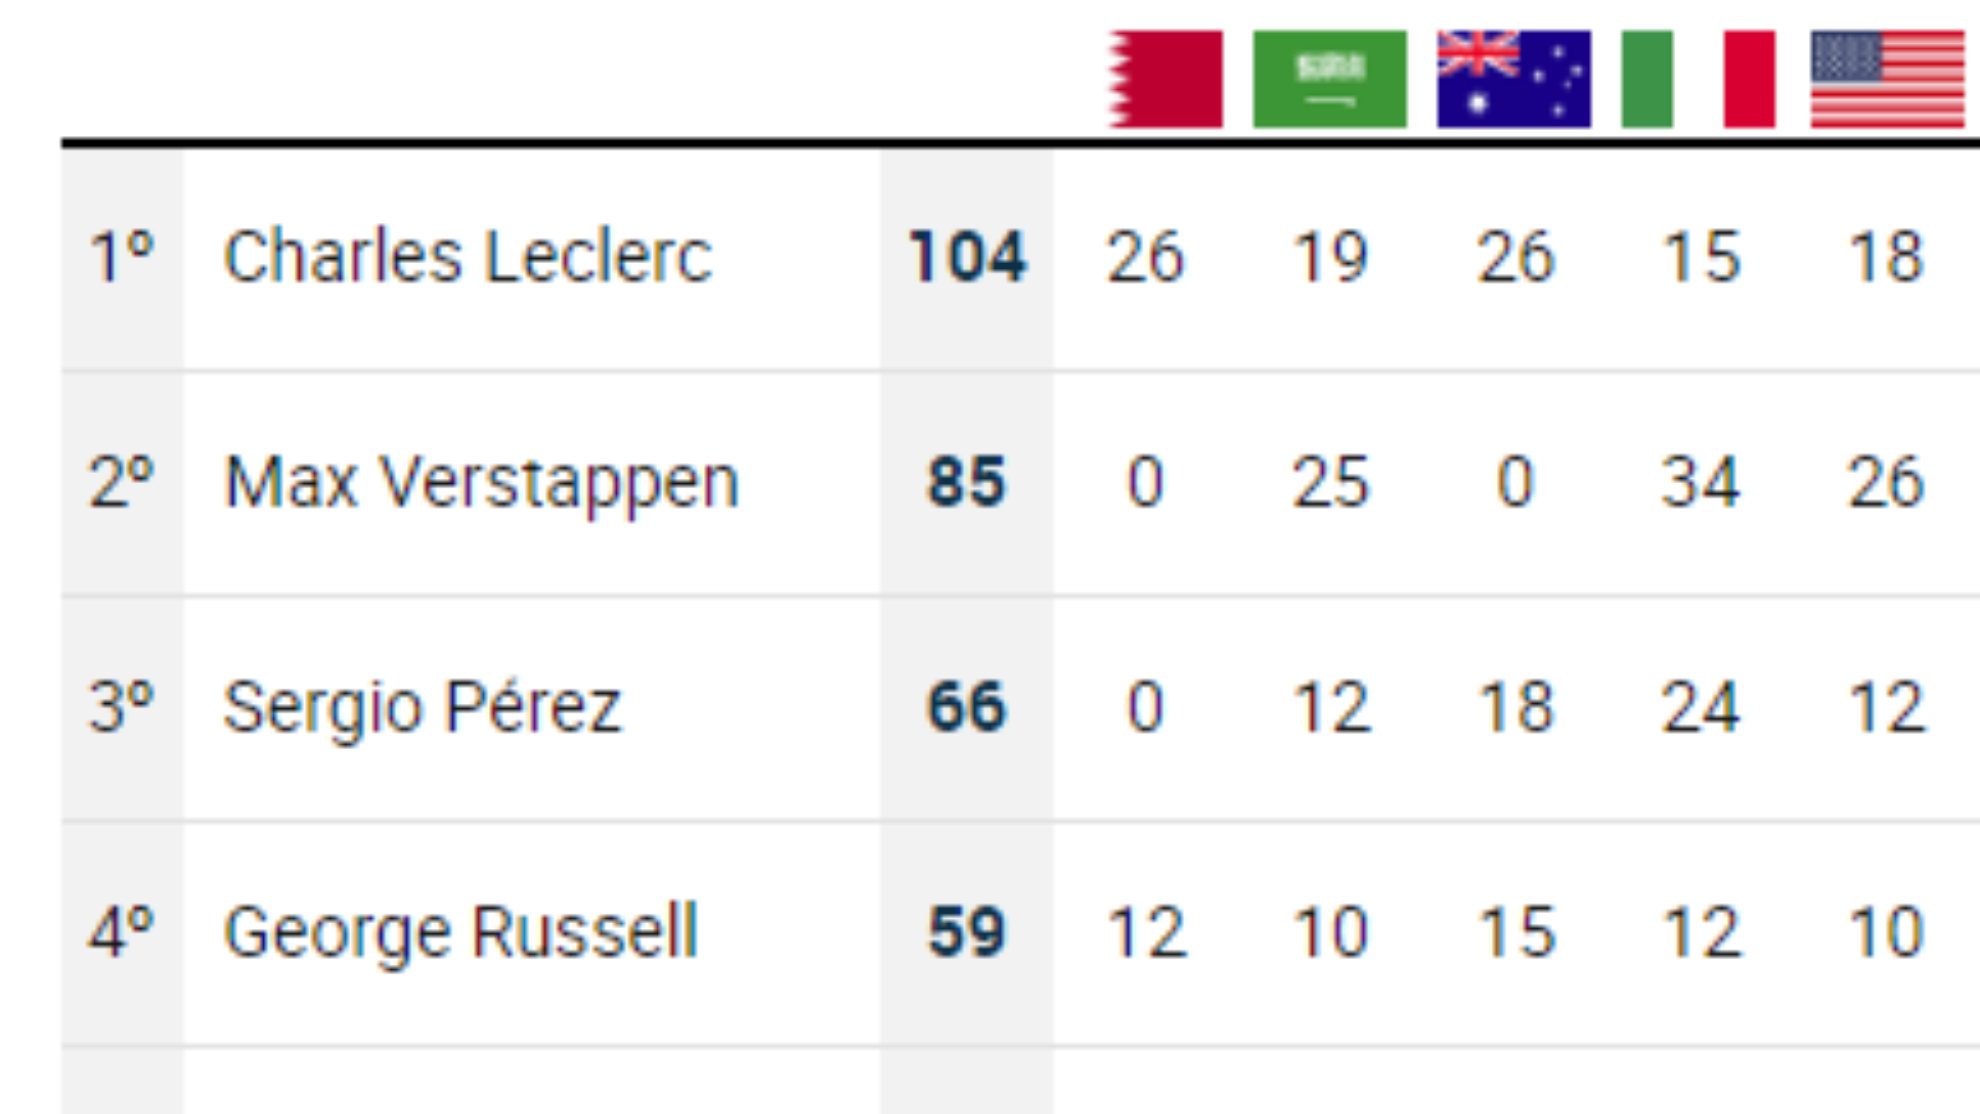 Así está el Mundial: Leclerc manda pero se acerca Mad Max